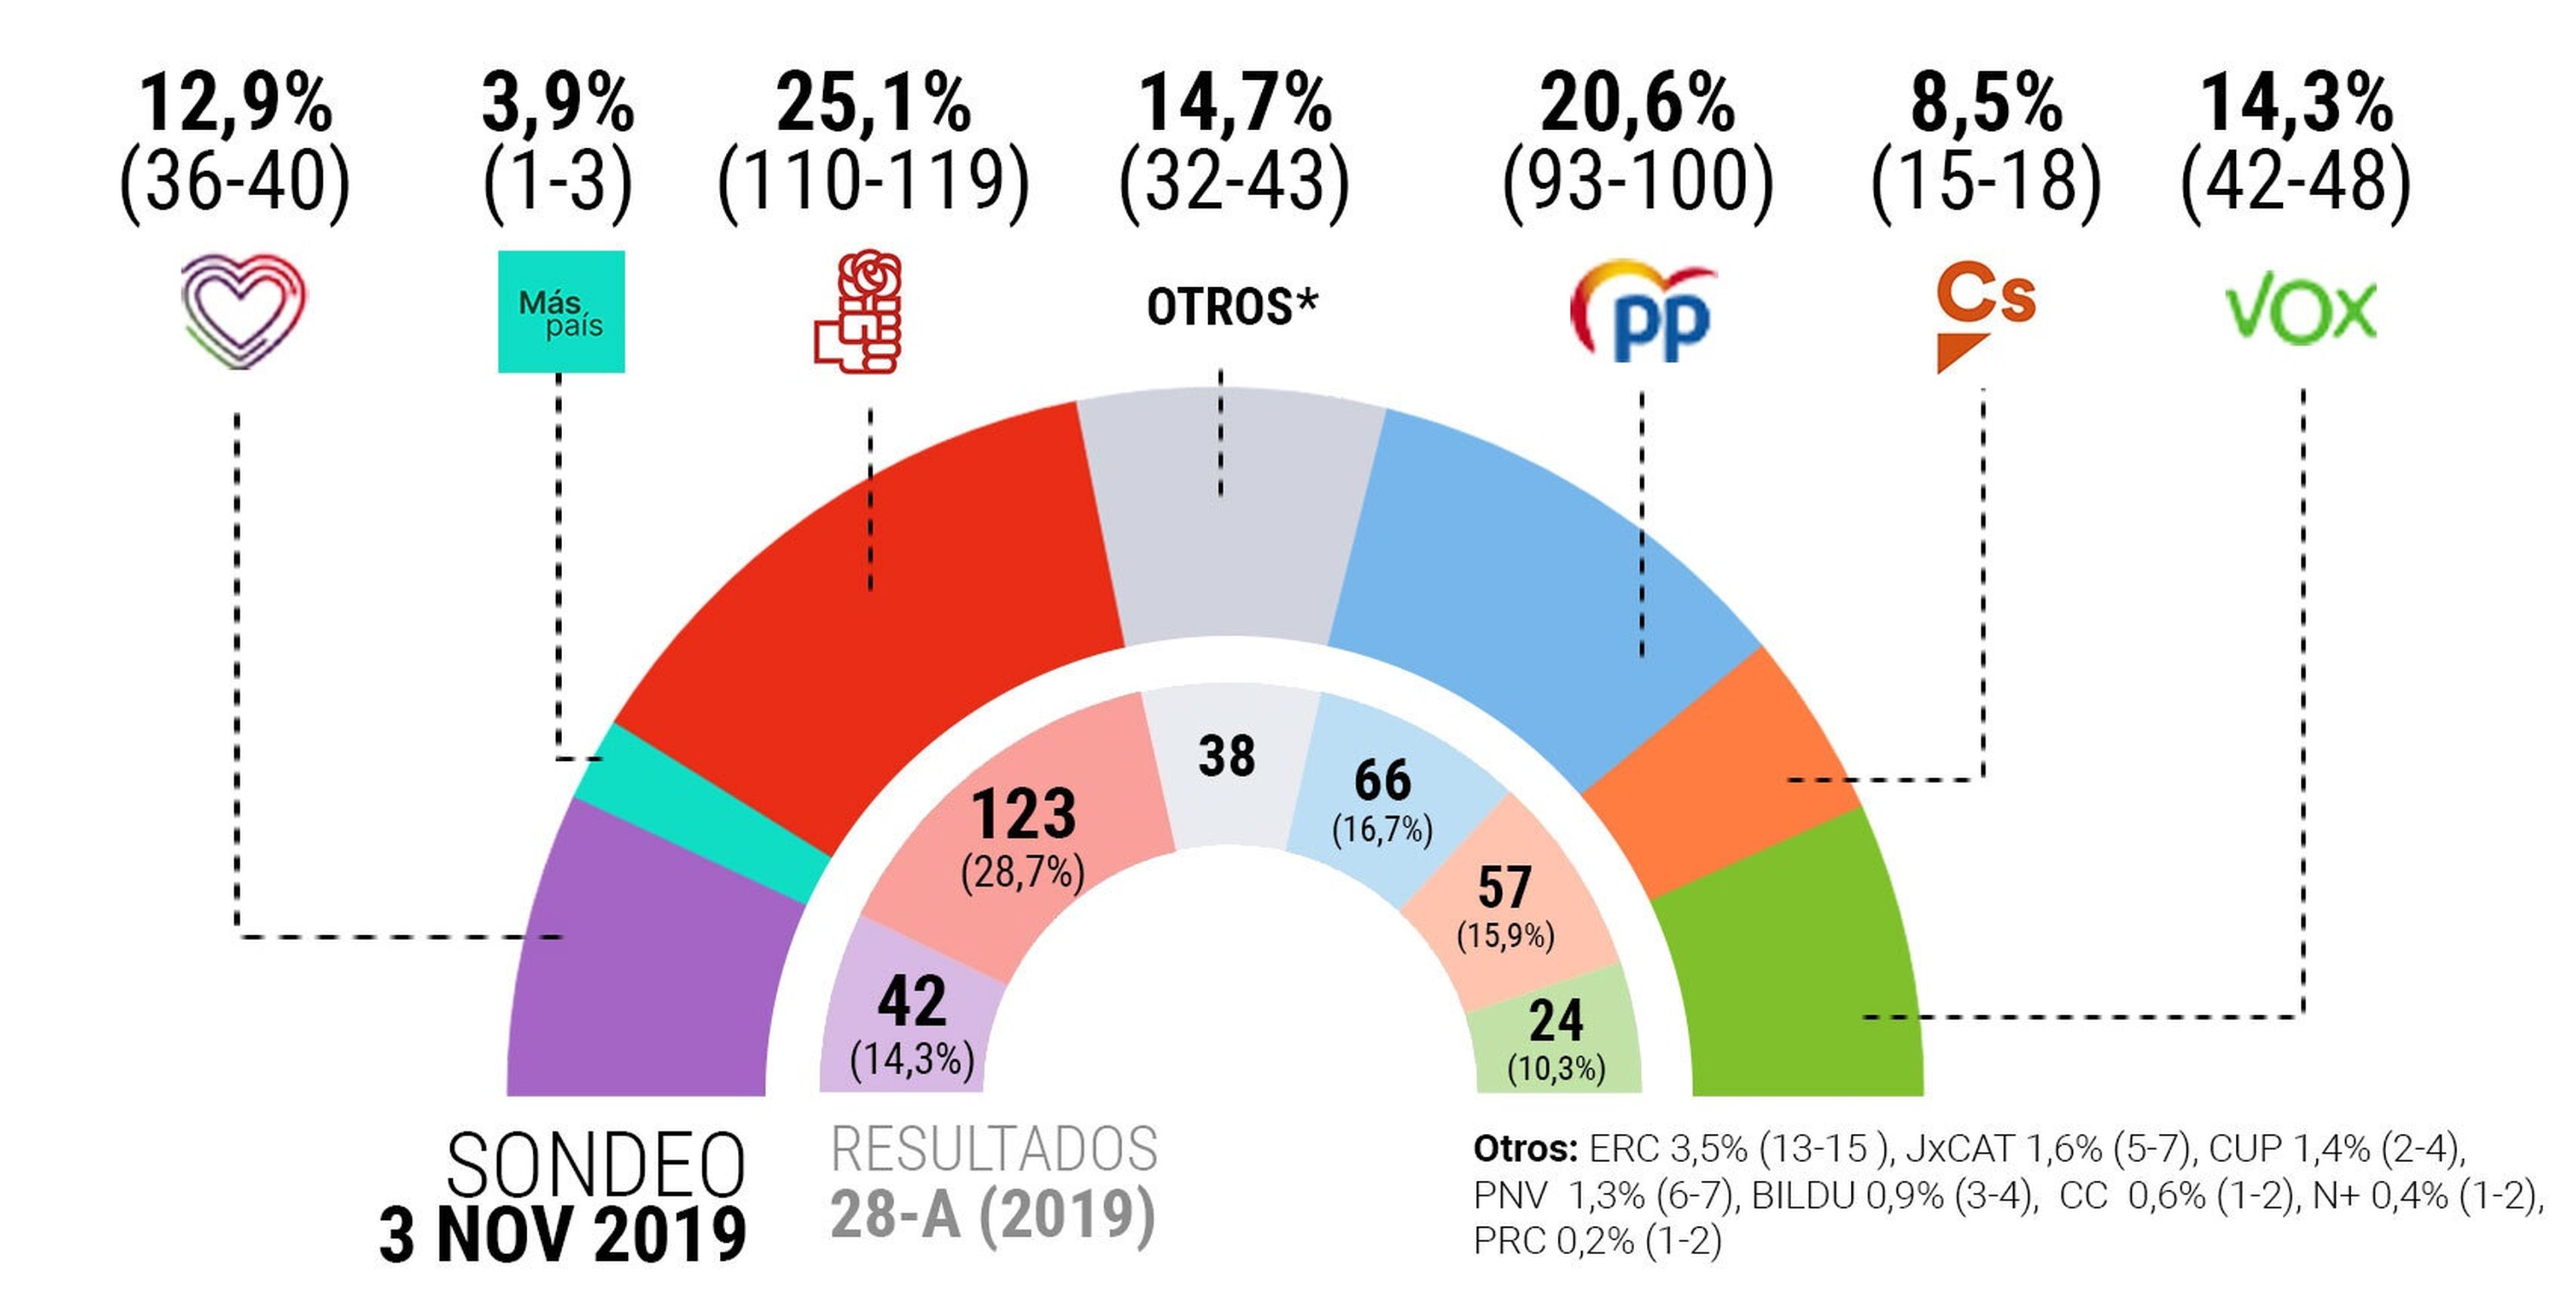 Encuesta electoral publicada en El Español